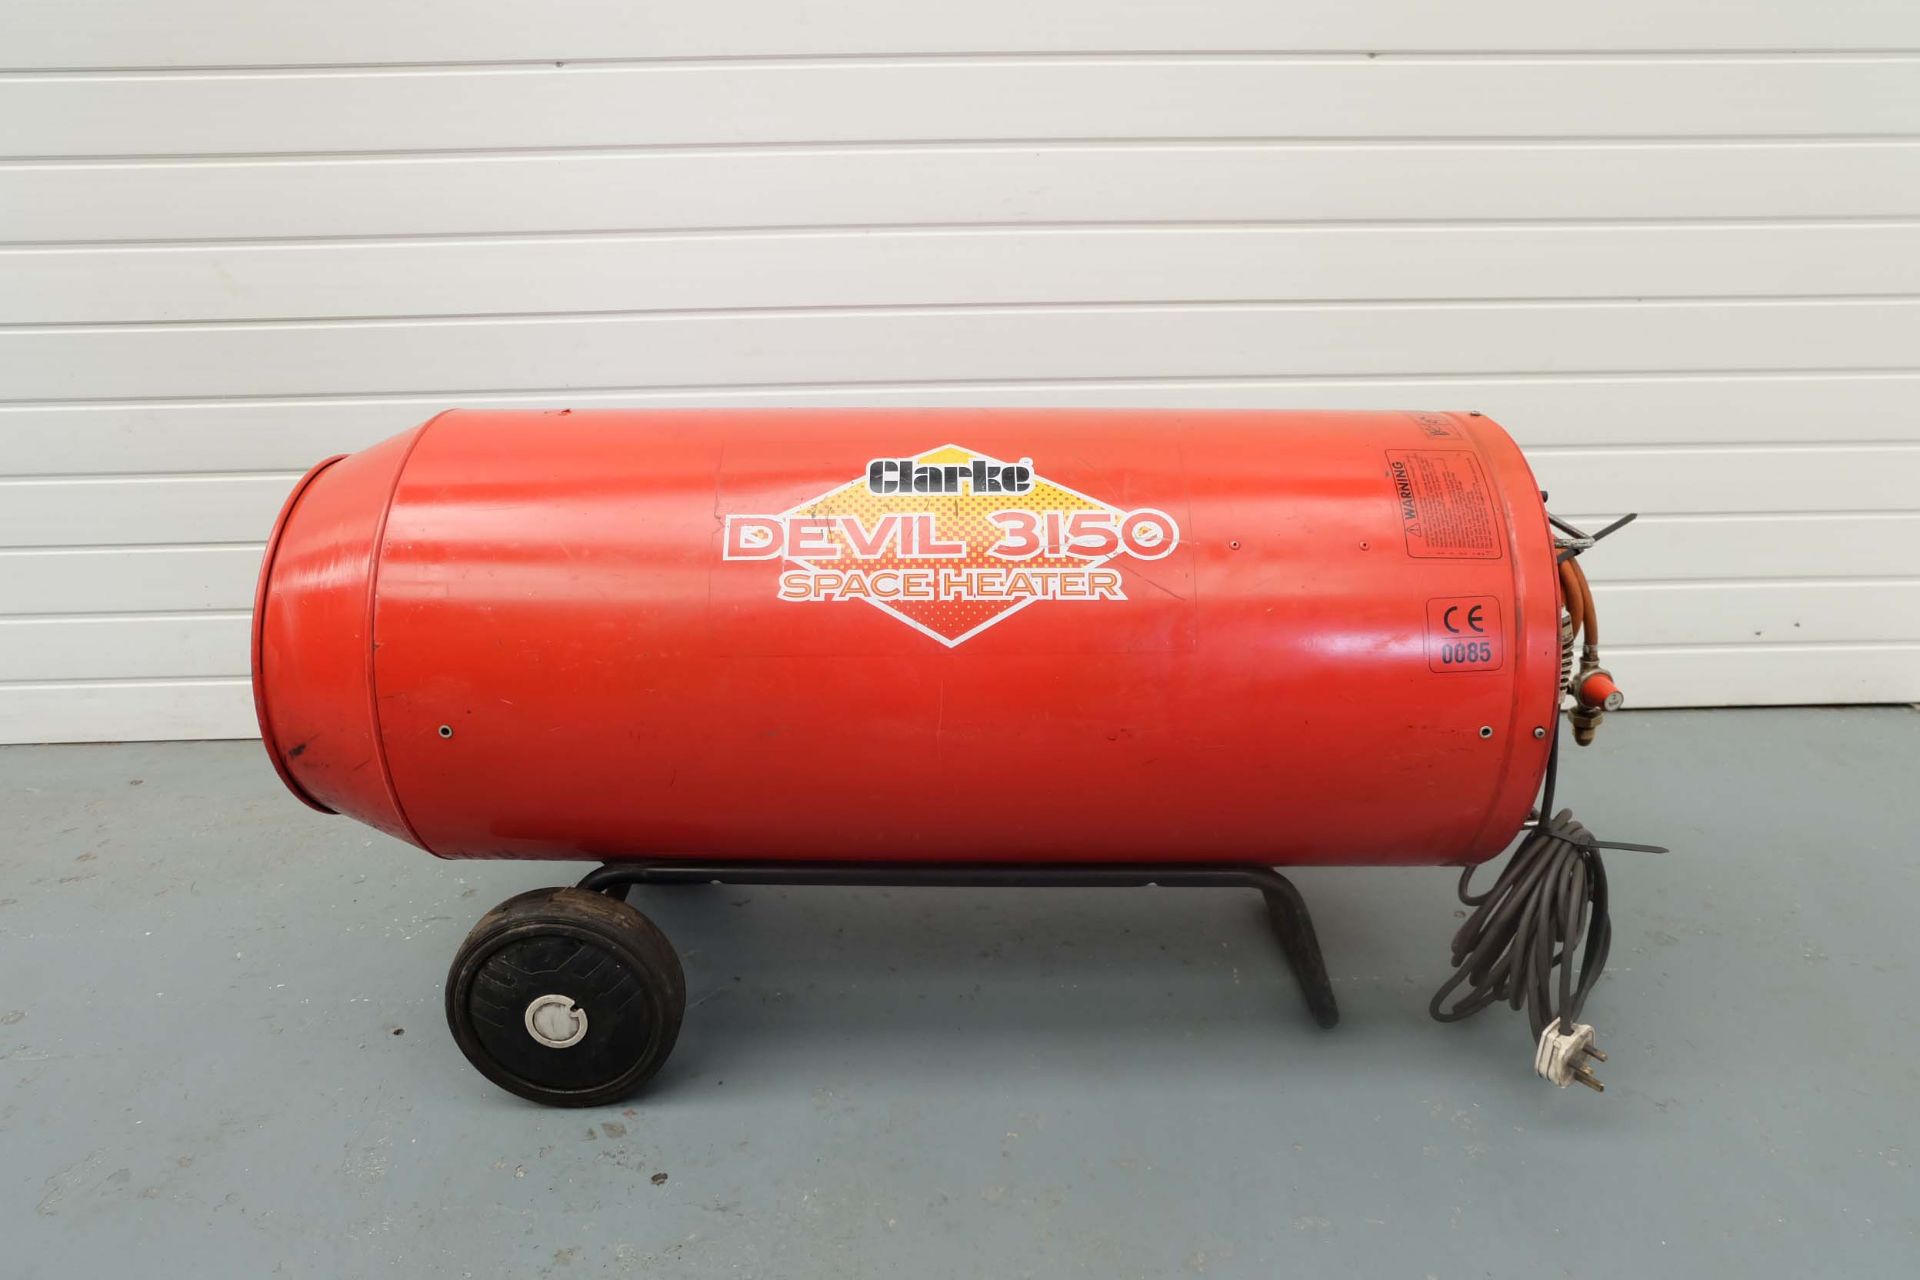 Clarke Devil 3150 Space Heater Propane Gas Heater. Maximum Heat Output 344,000 BTU per Hour.